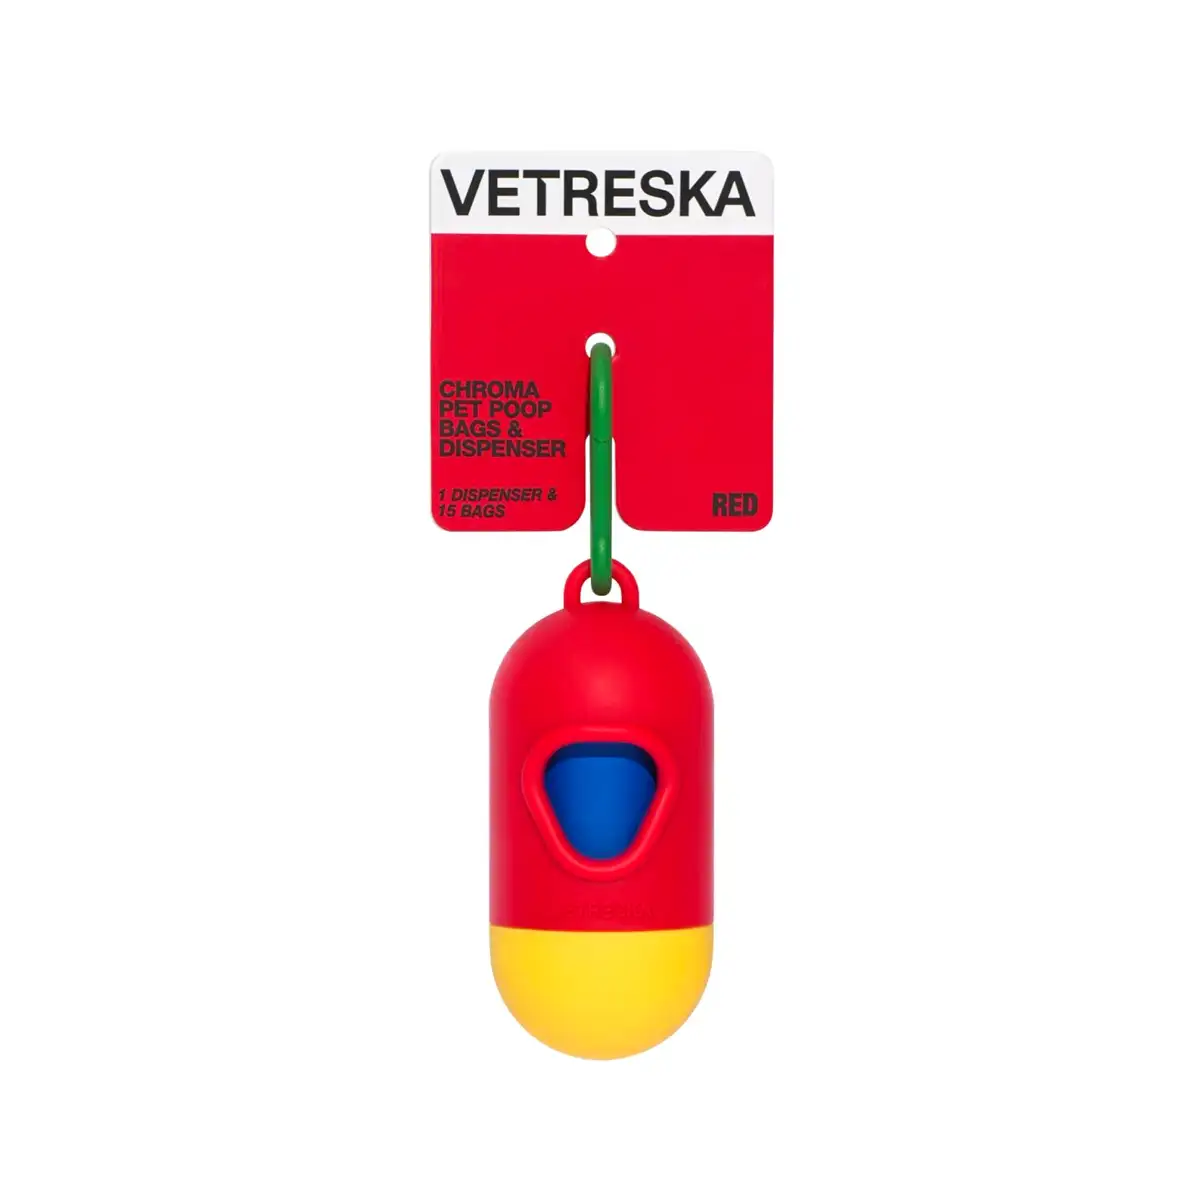 Vetreska - Chroma Pet Poop Bag Dispenser Set (Red)